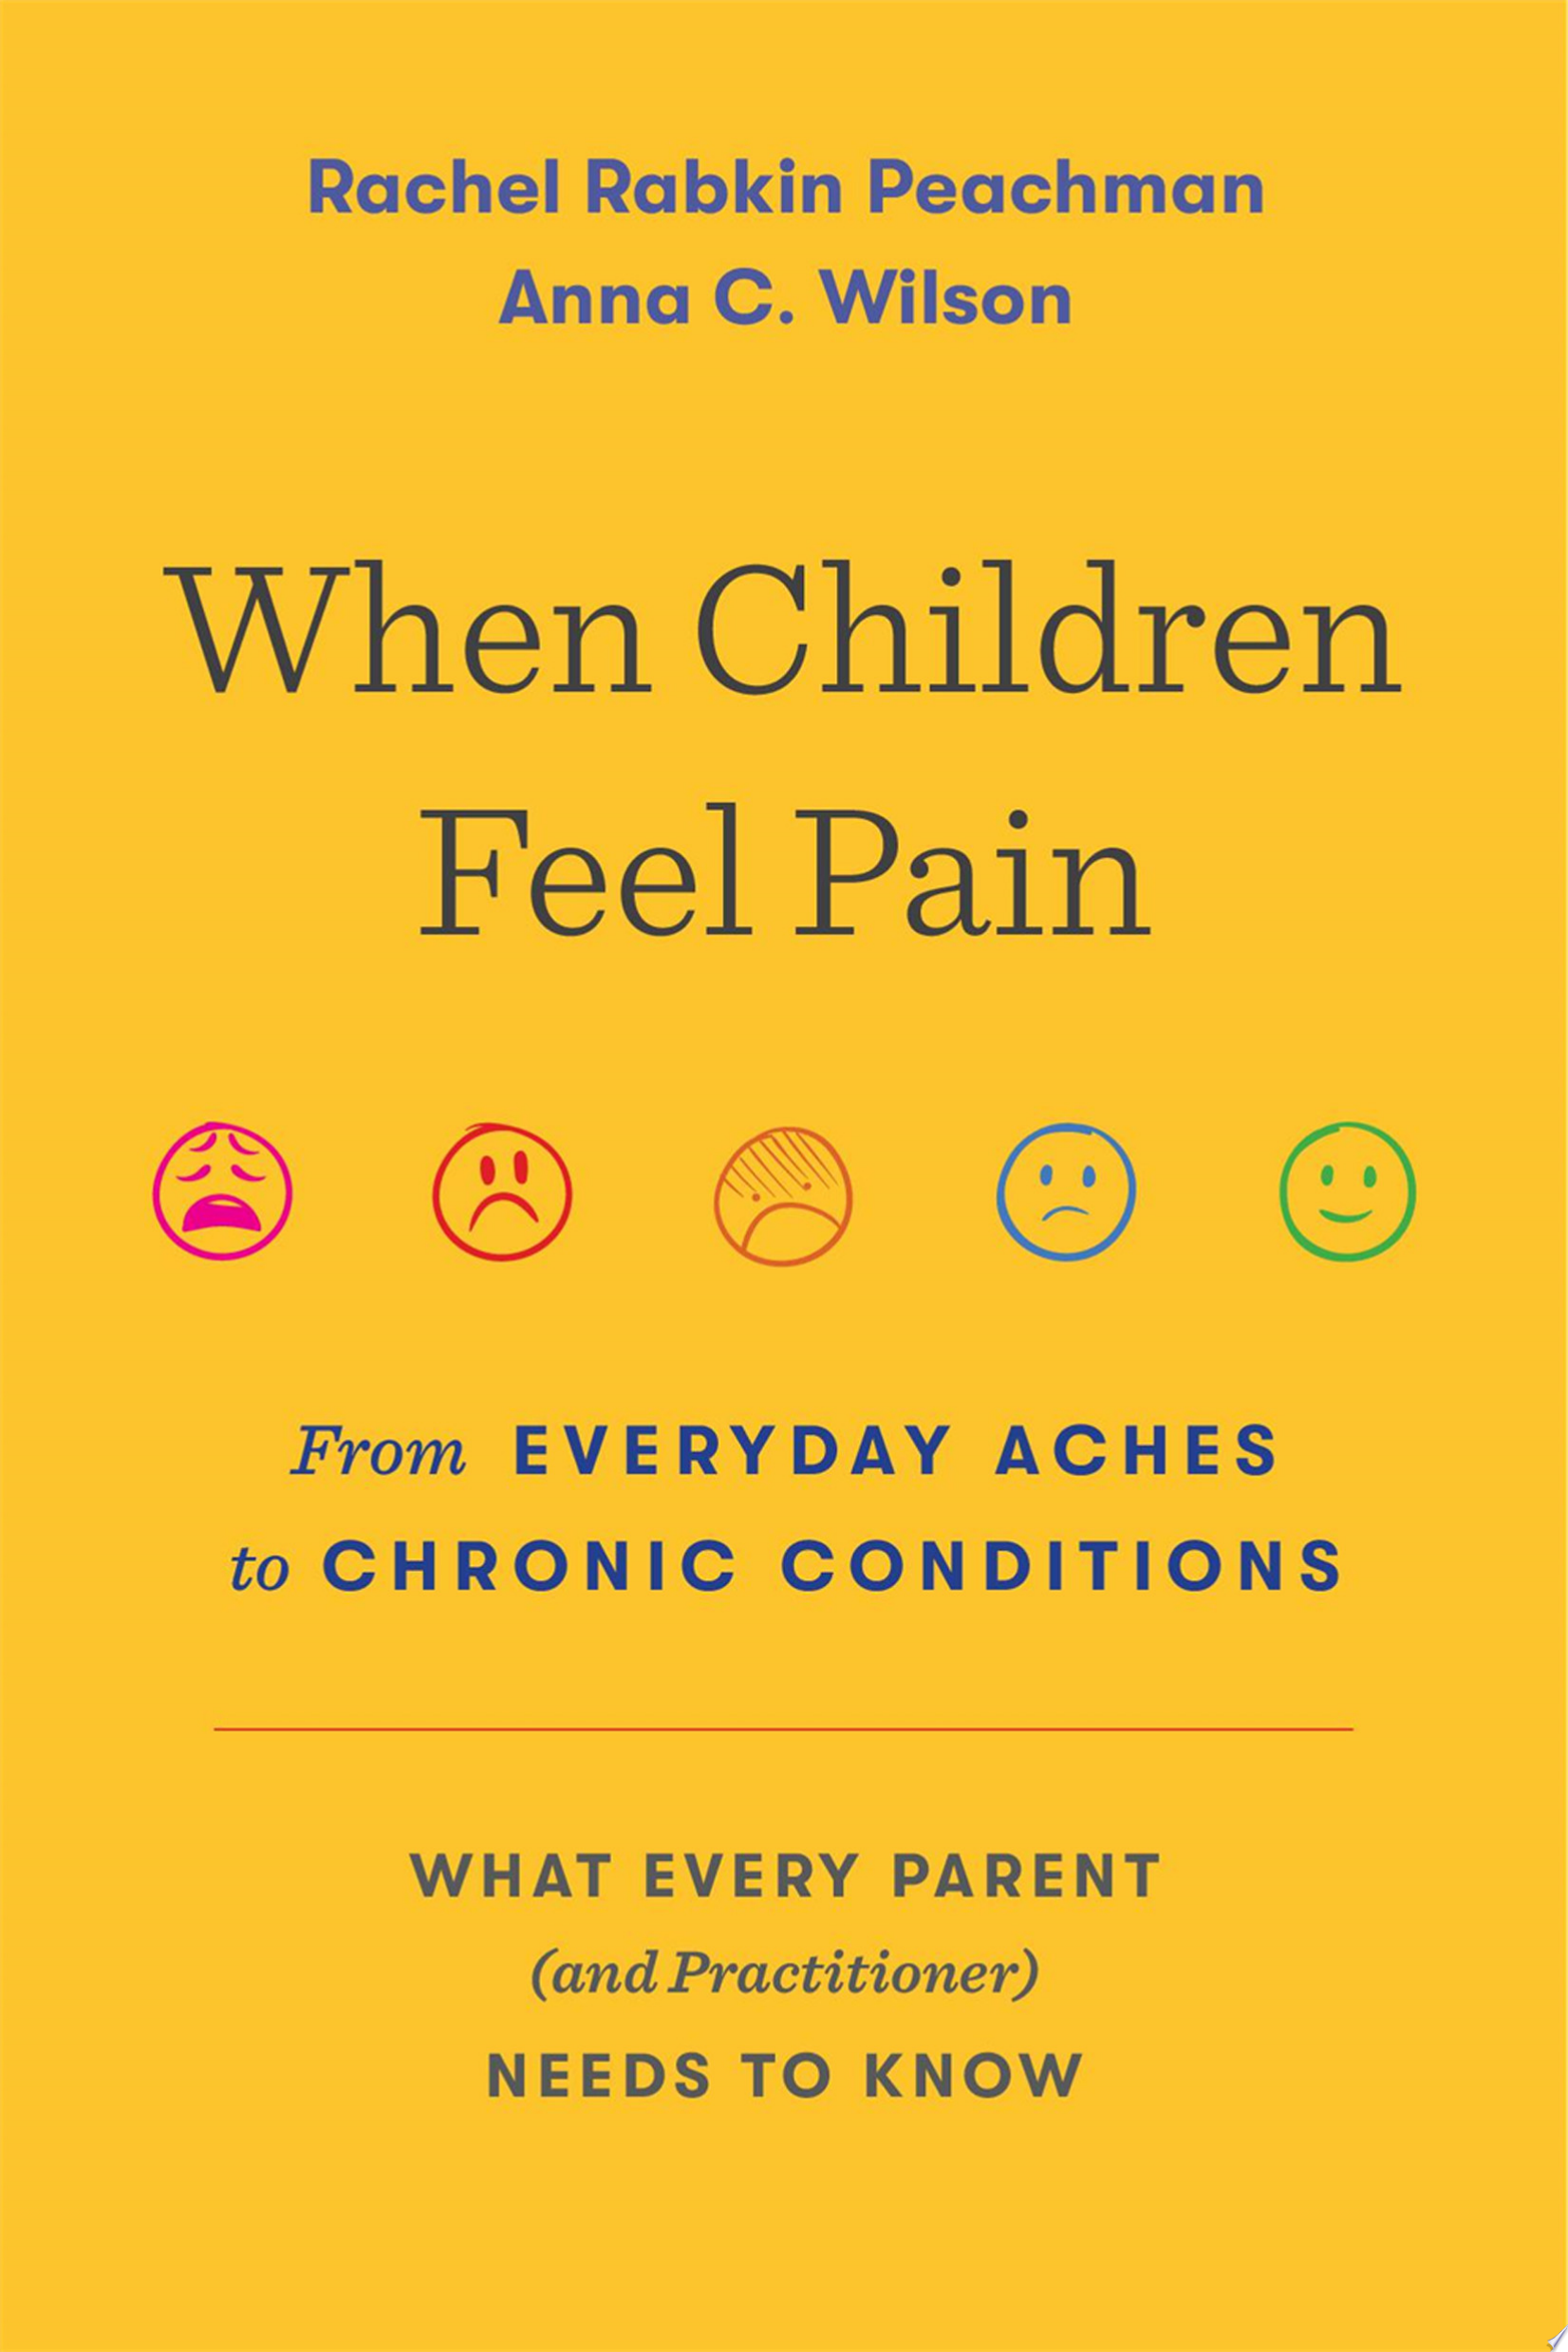 Image for "When Children Feel Pain"